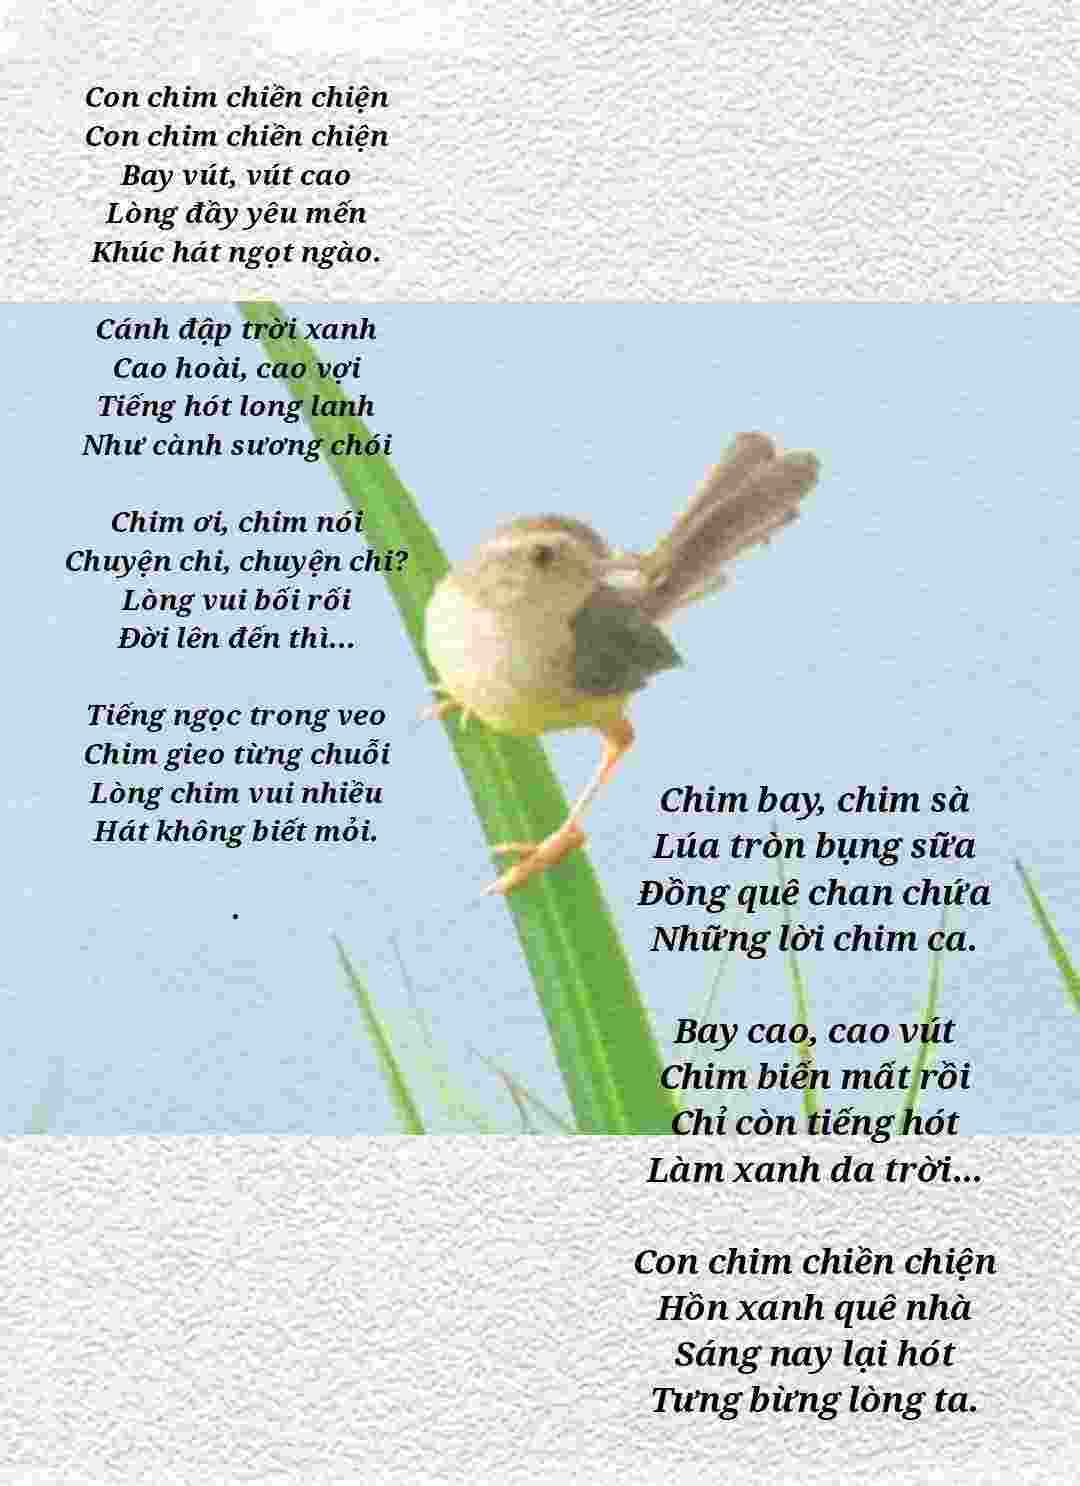 Bảo Lộc - Cần mua chim chiền chiện bụng vàng như hình | Click49 - Bảo Lộc |  Đà Lạt | Lâm Đồng